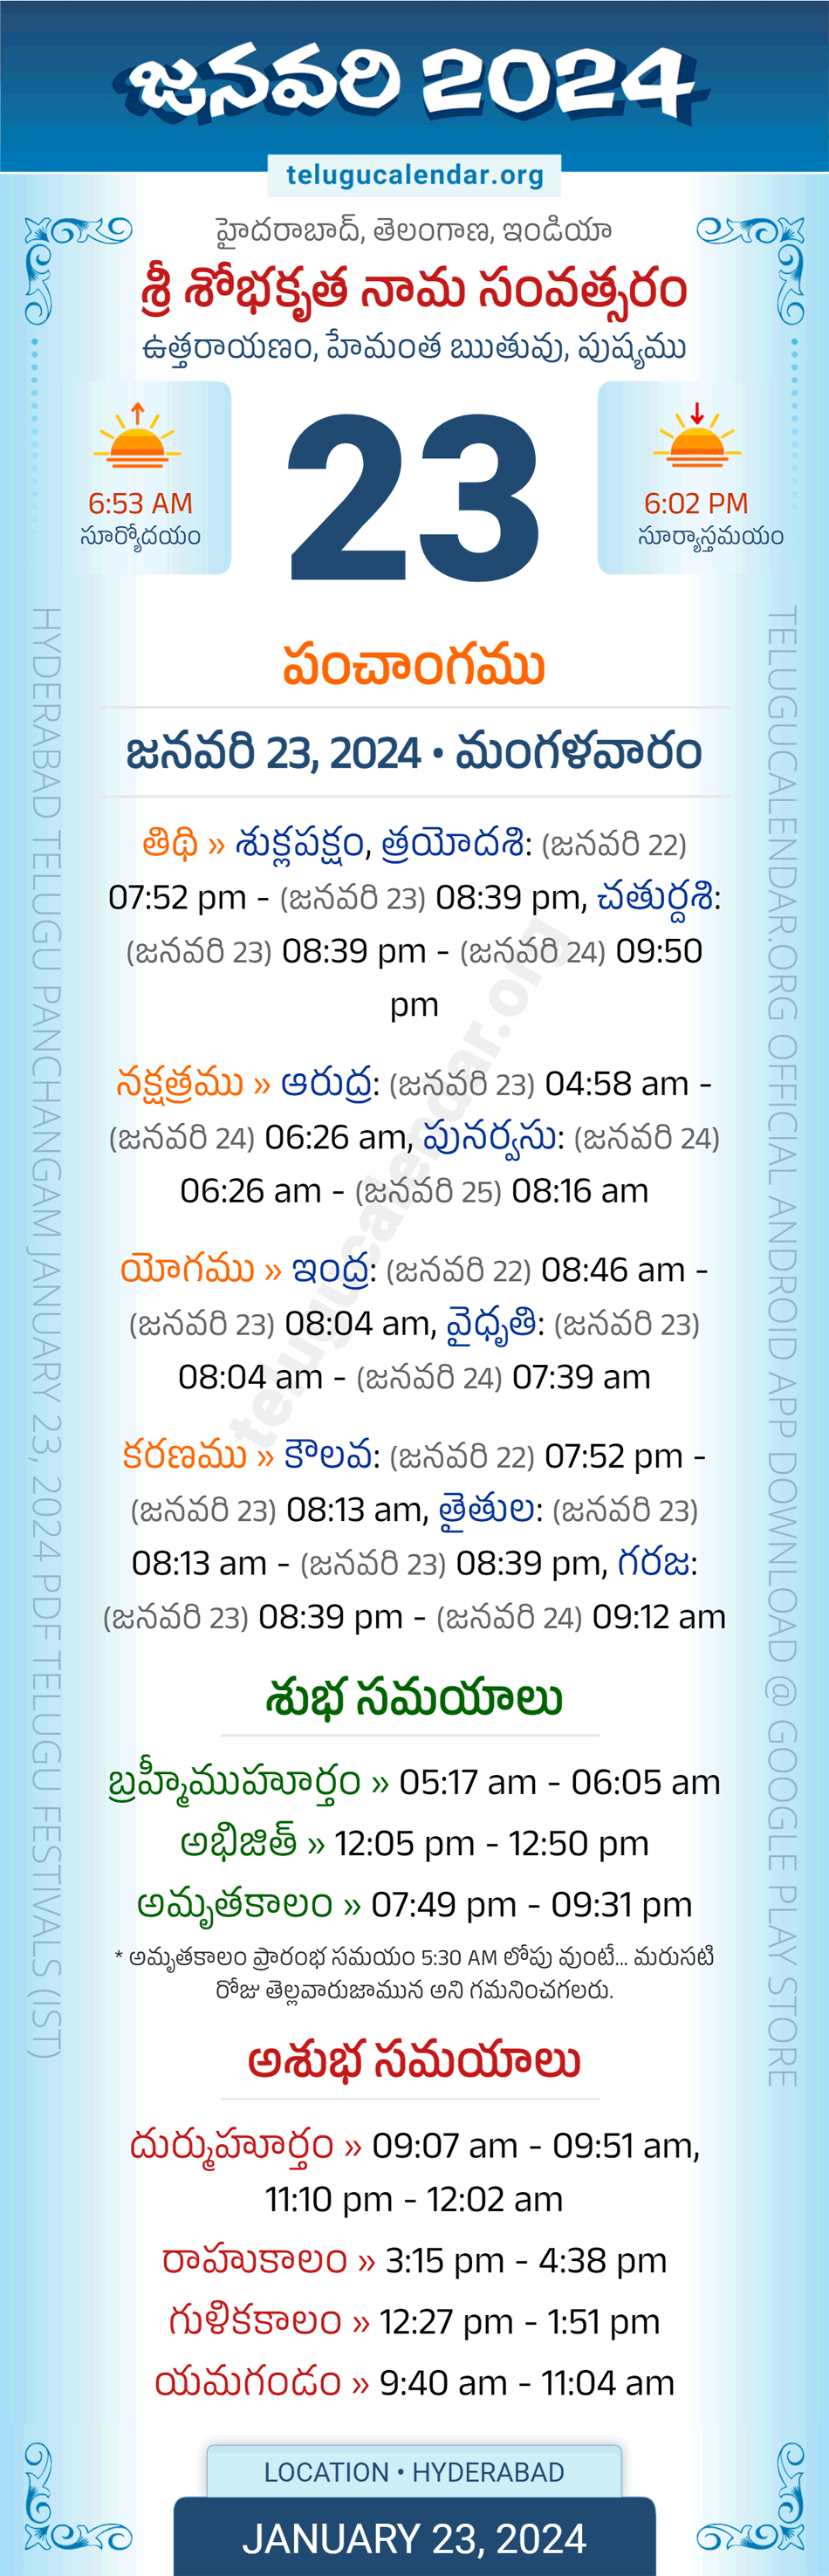 Telugu Calendar July 2024 London Calendar 2024 All Holidays